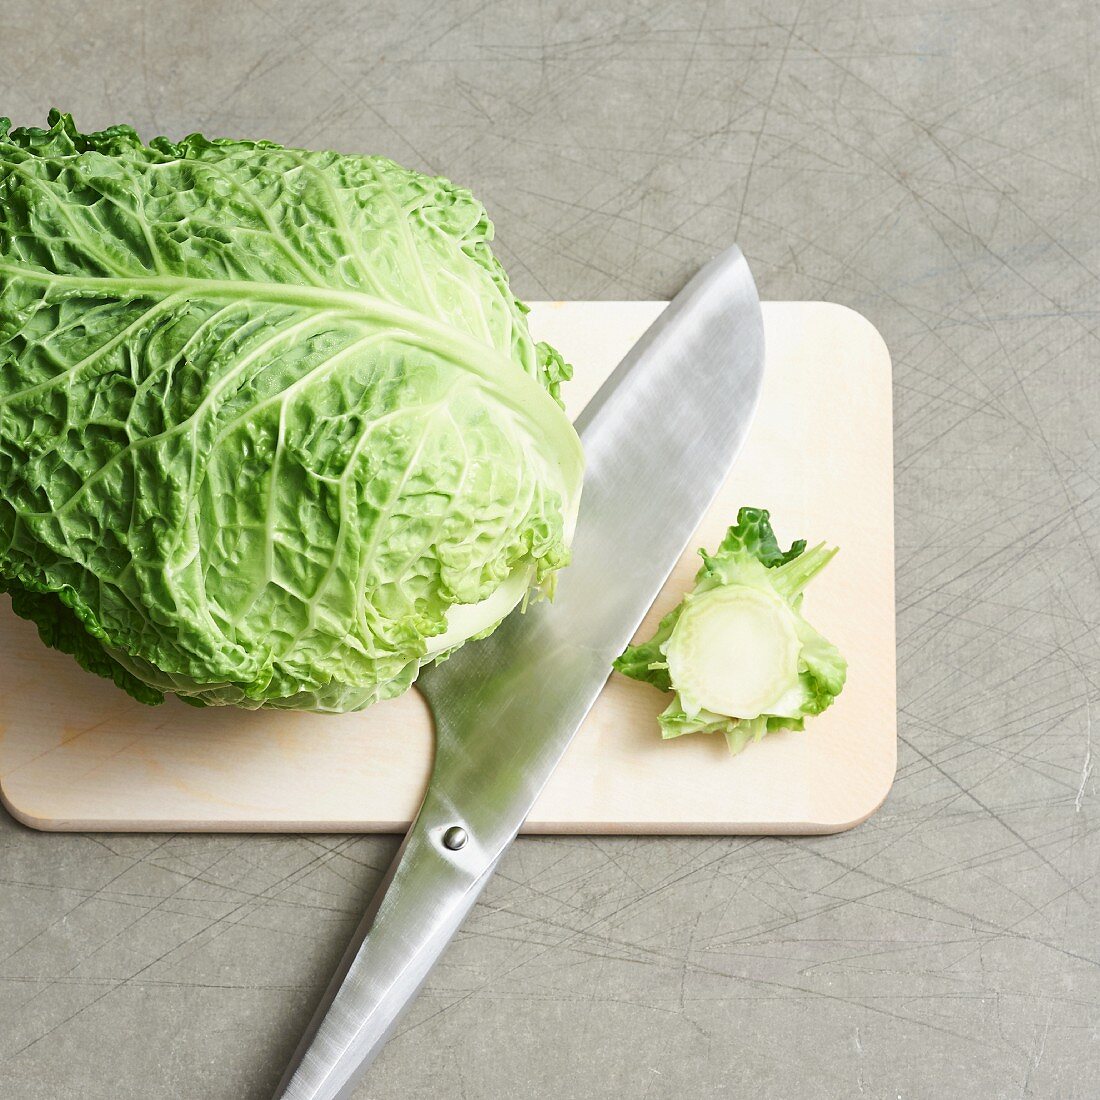 Savoy cabbage being sliced